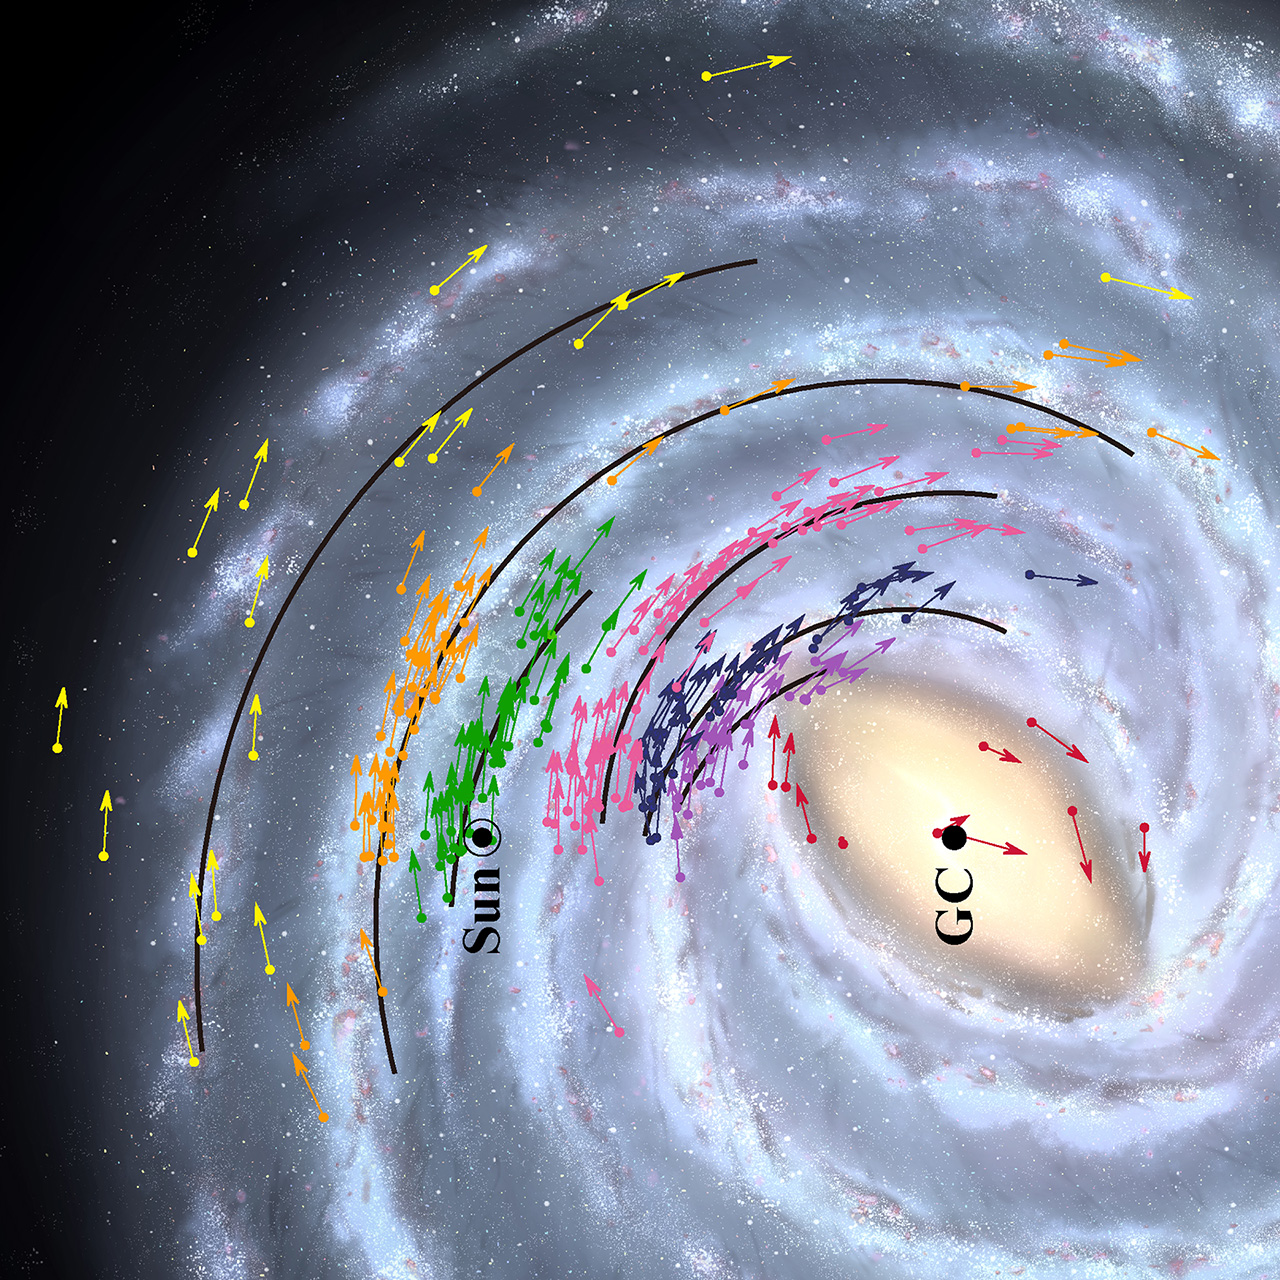 Карта положення об'єктів Чумацького Шляху. Стрілками показано дані про місцезнаходження і швидкість 224 об'єктів, використаних для моделі Галактики. Суцільними чорними лініями показано положення спіральних рукавів. Кольором позначені групи об'єктів, що належать одному рукаву. Credit: NAOJ